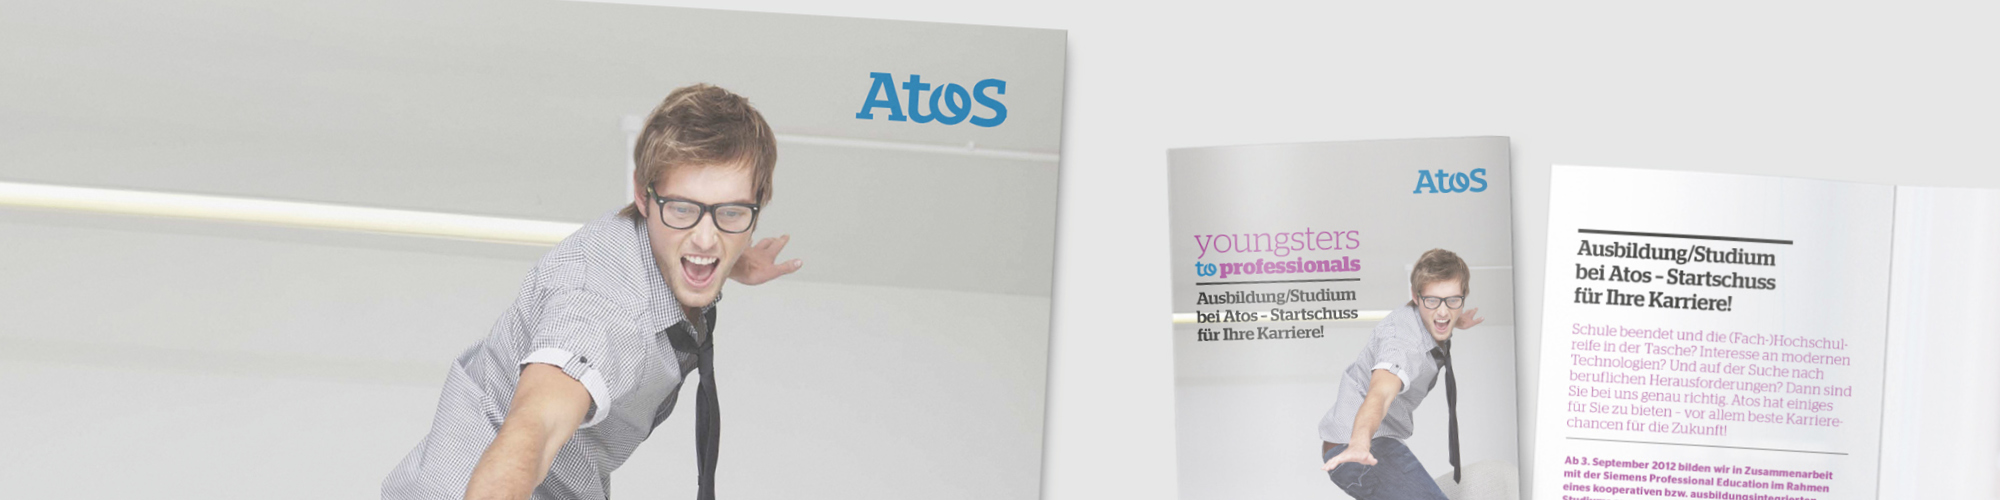 Atos: Auftrag über Akima Media - Zwei HR-Kampagnen, Poster, Visitenkarten, Flyer, Online-Banner, Stellenanzeigen